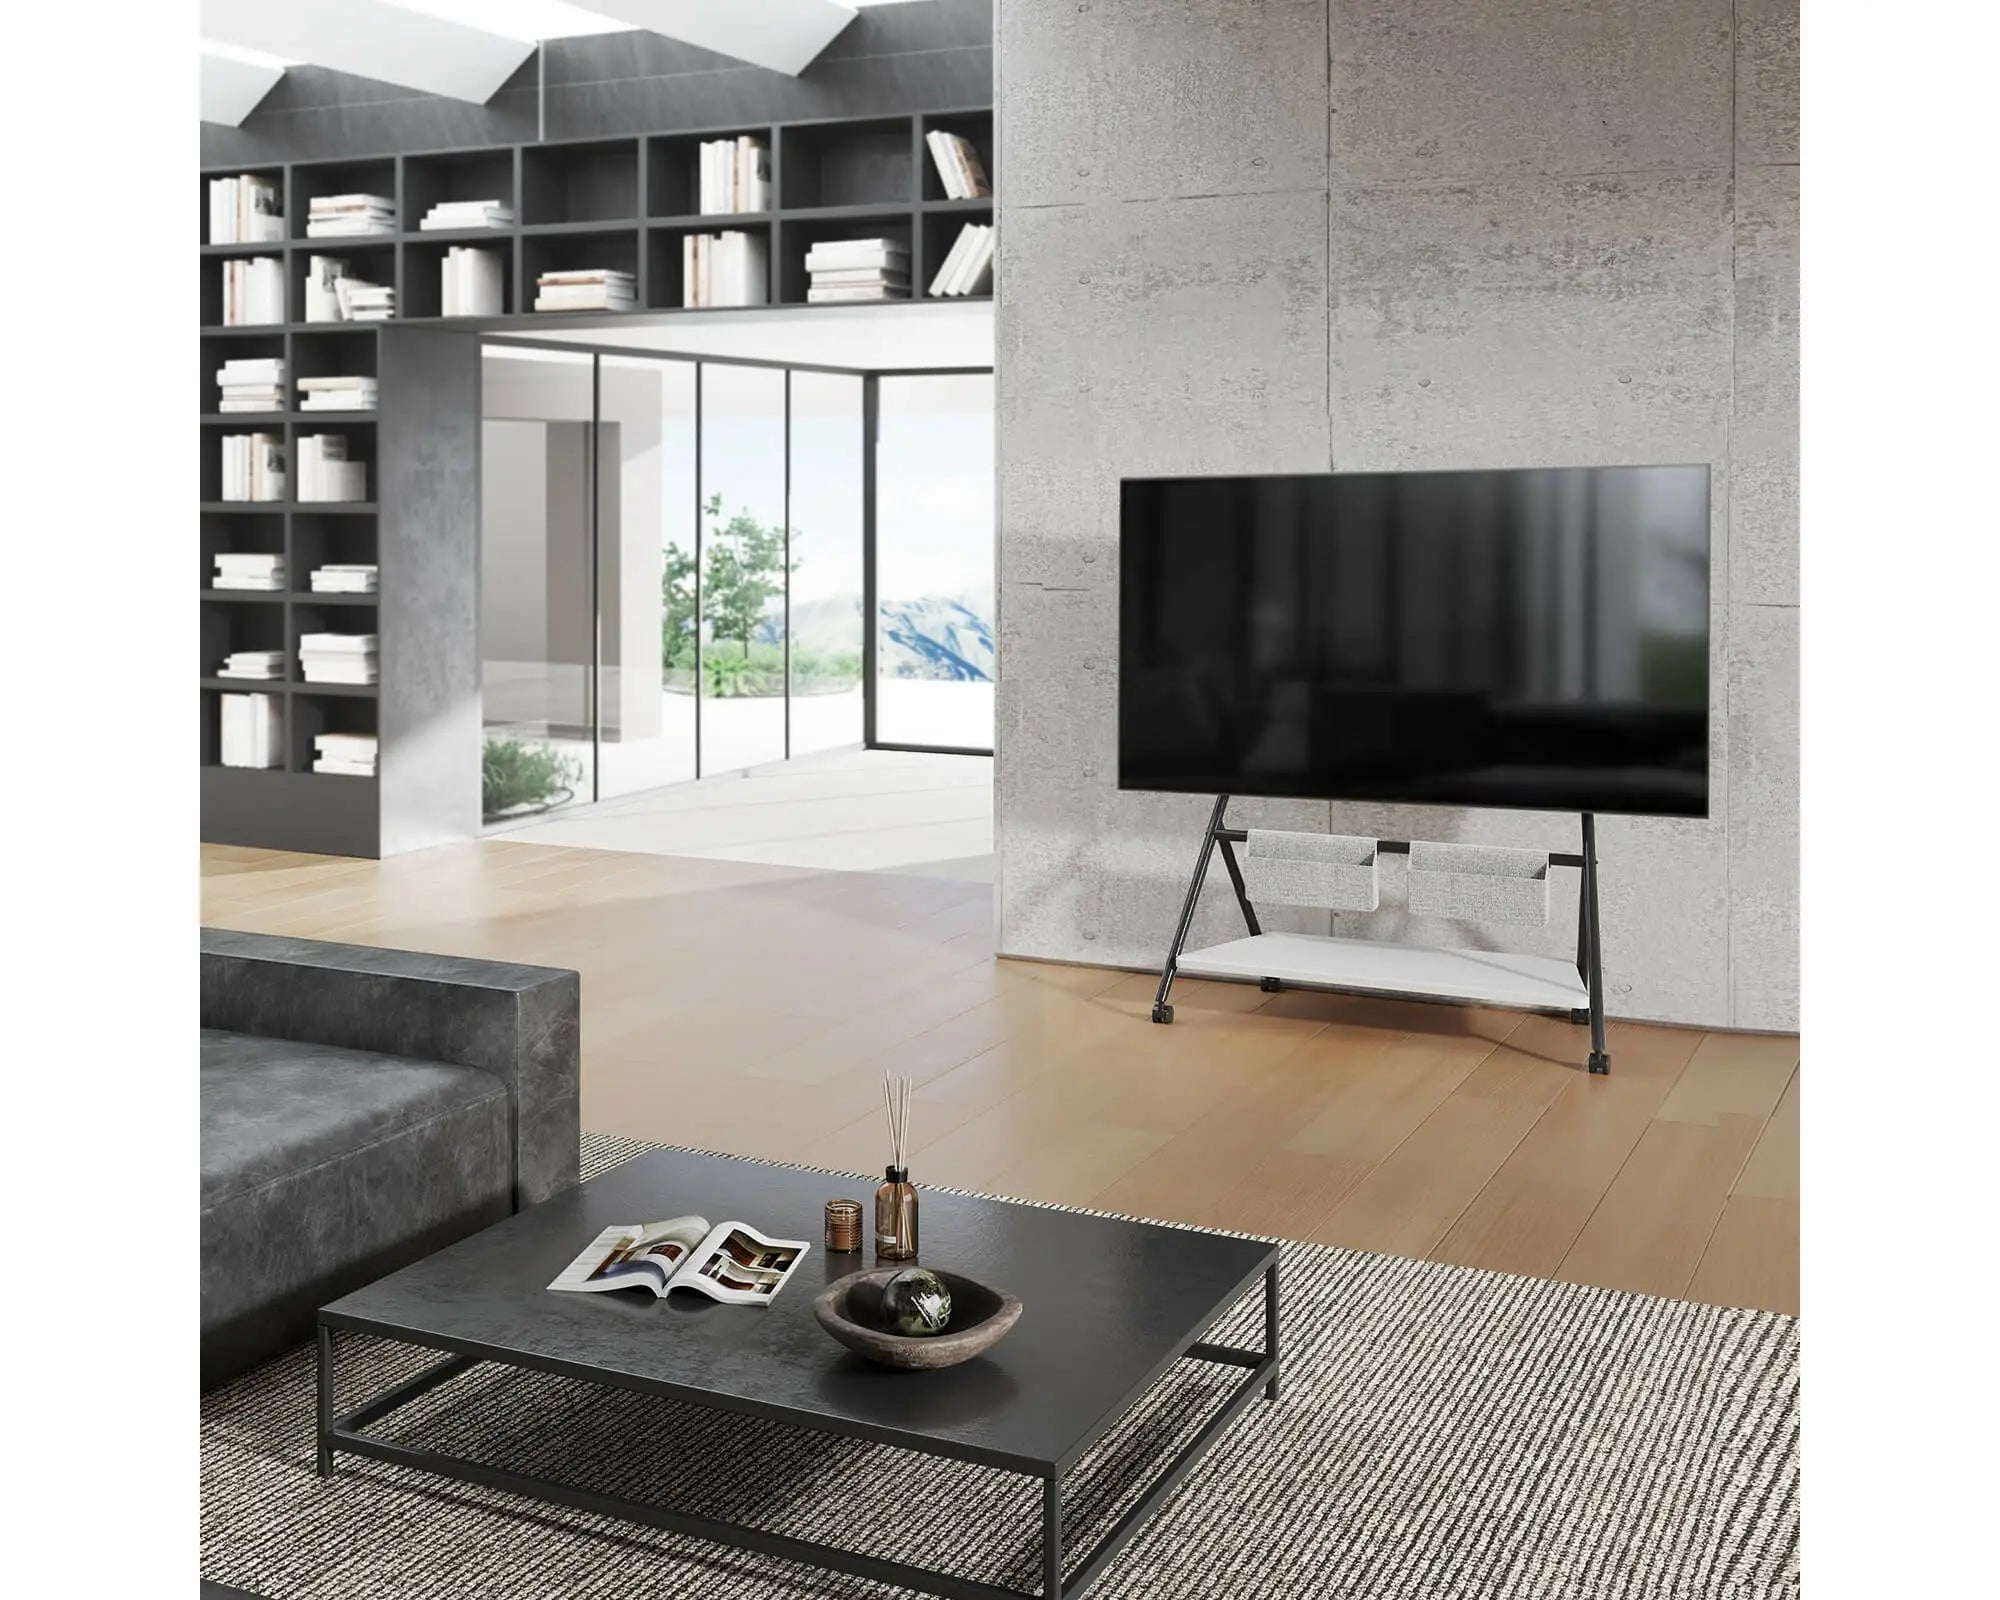 Collector Serie ™ TV-Ständer für 65-88 Zoll